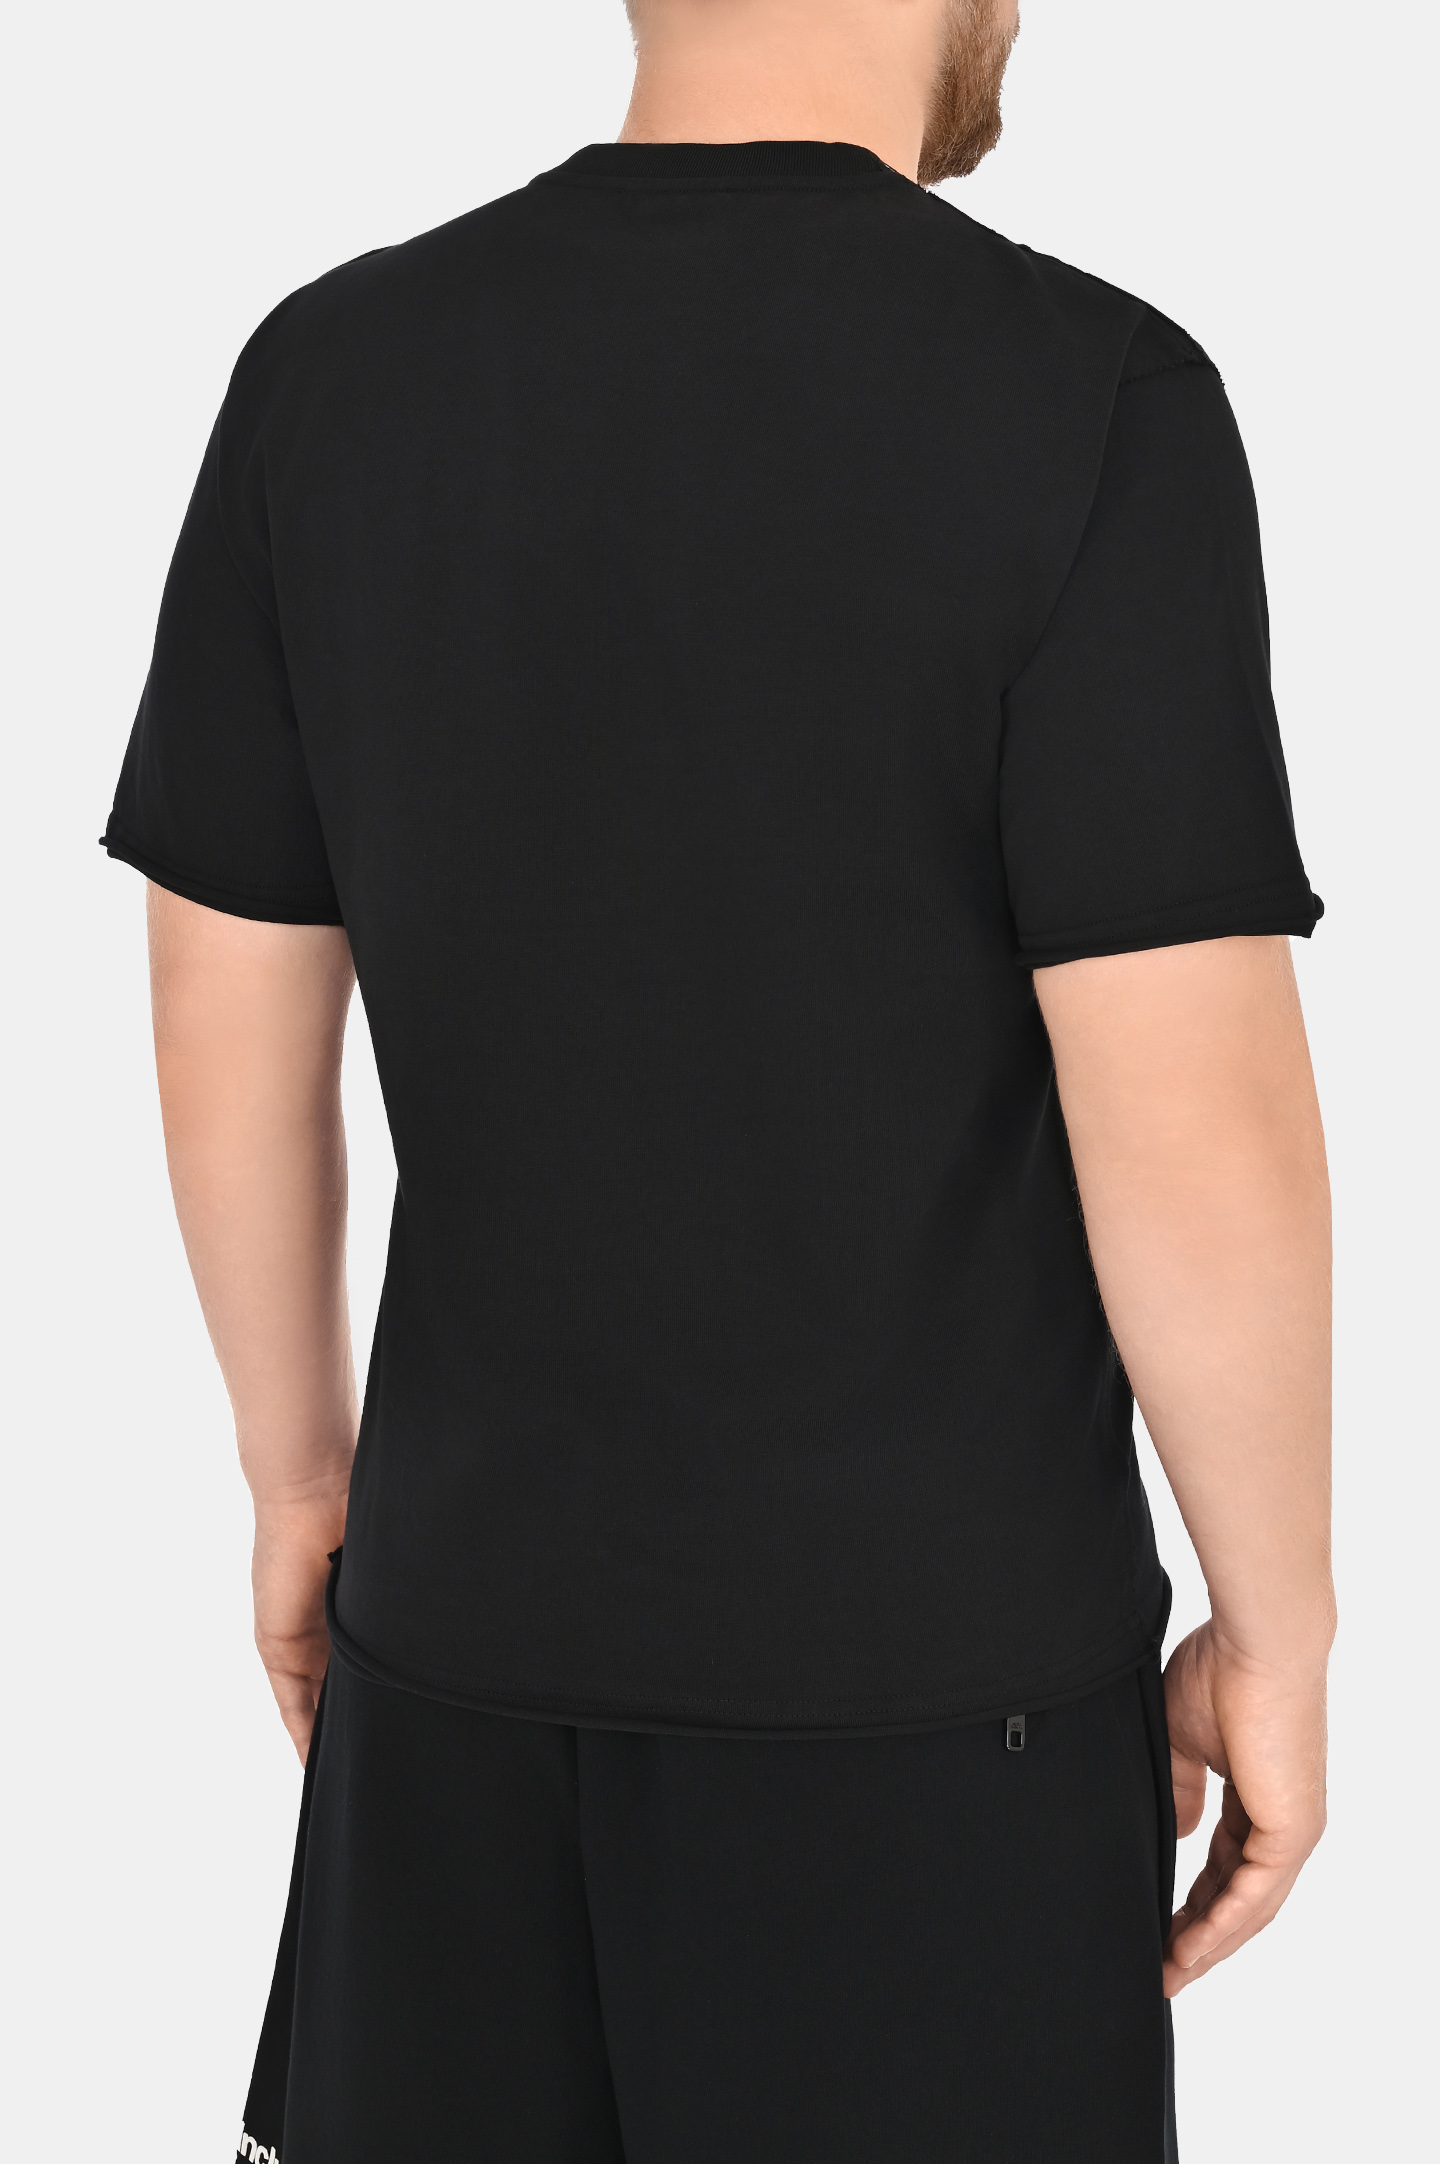 Хлопковая футболка с принтом DOLCE & GABBANA G8RI4T G7K7N, цвет: Черный, Мужской